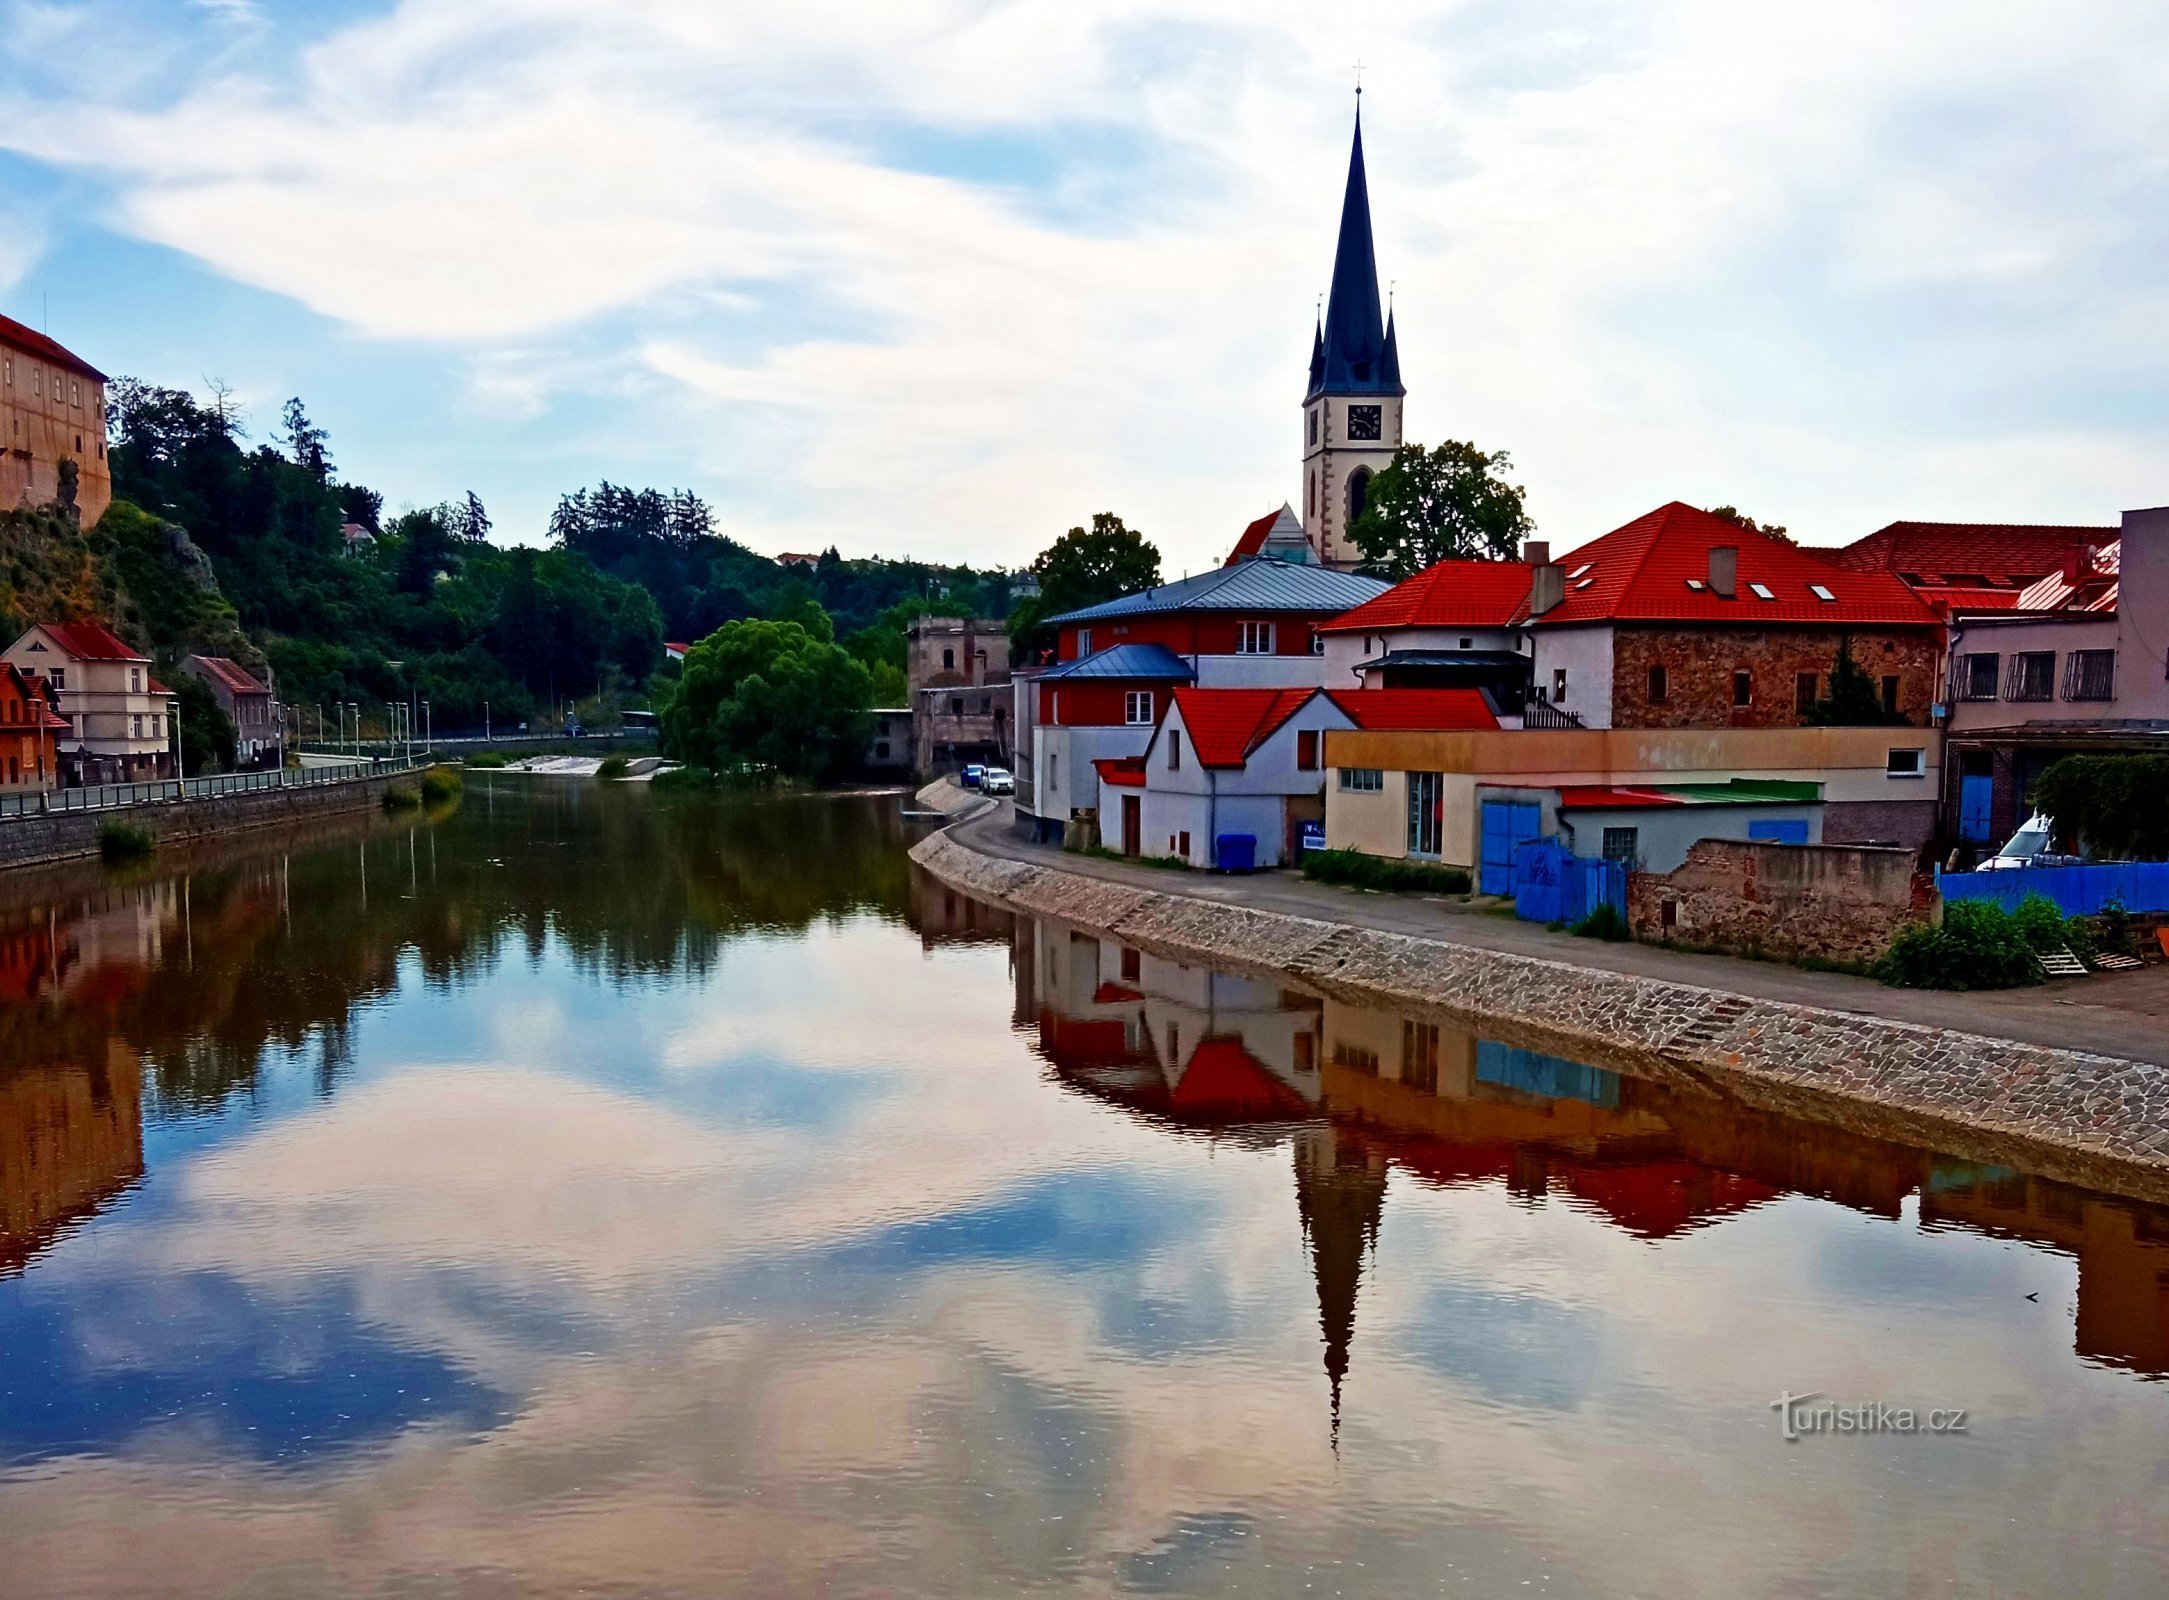 Thị trấn lịch sử - Ledeč nad Sázavou